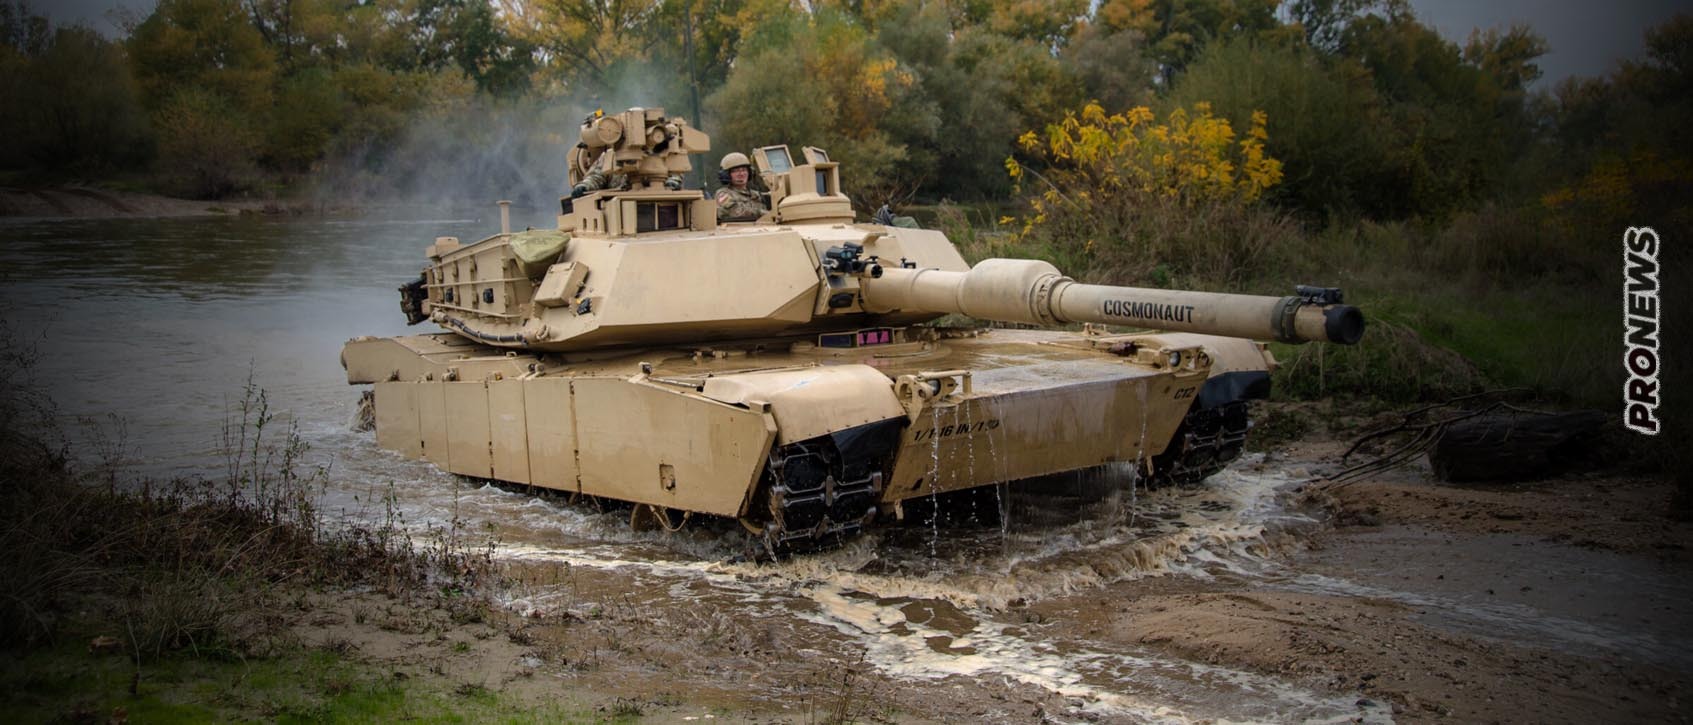 Σκηνικό Γ’ΠΠ: Μετά τη Γερμανία και οι ΗΠΑ ανακοινώνουν ότι στέλνουν άρματα μάχης Μ1Α2 Abrams κατά της Ρωσίας